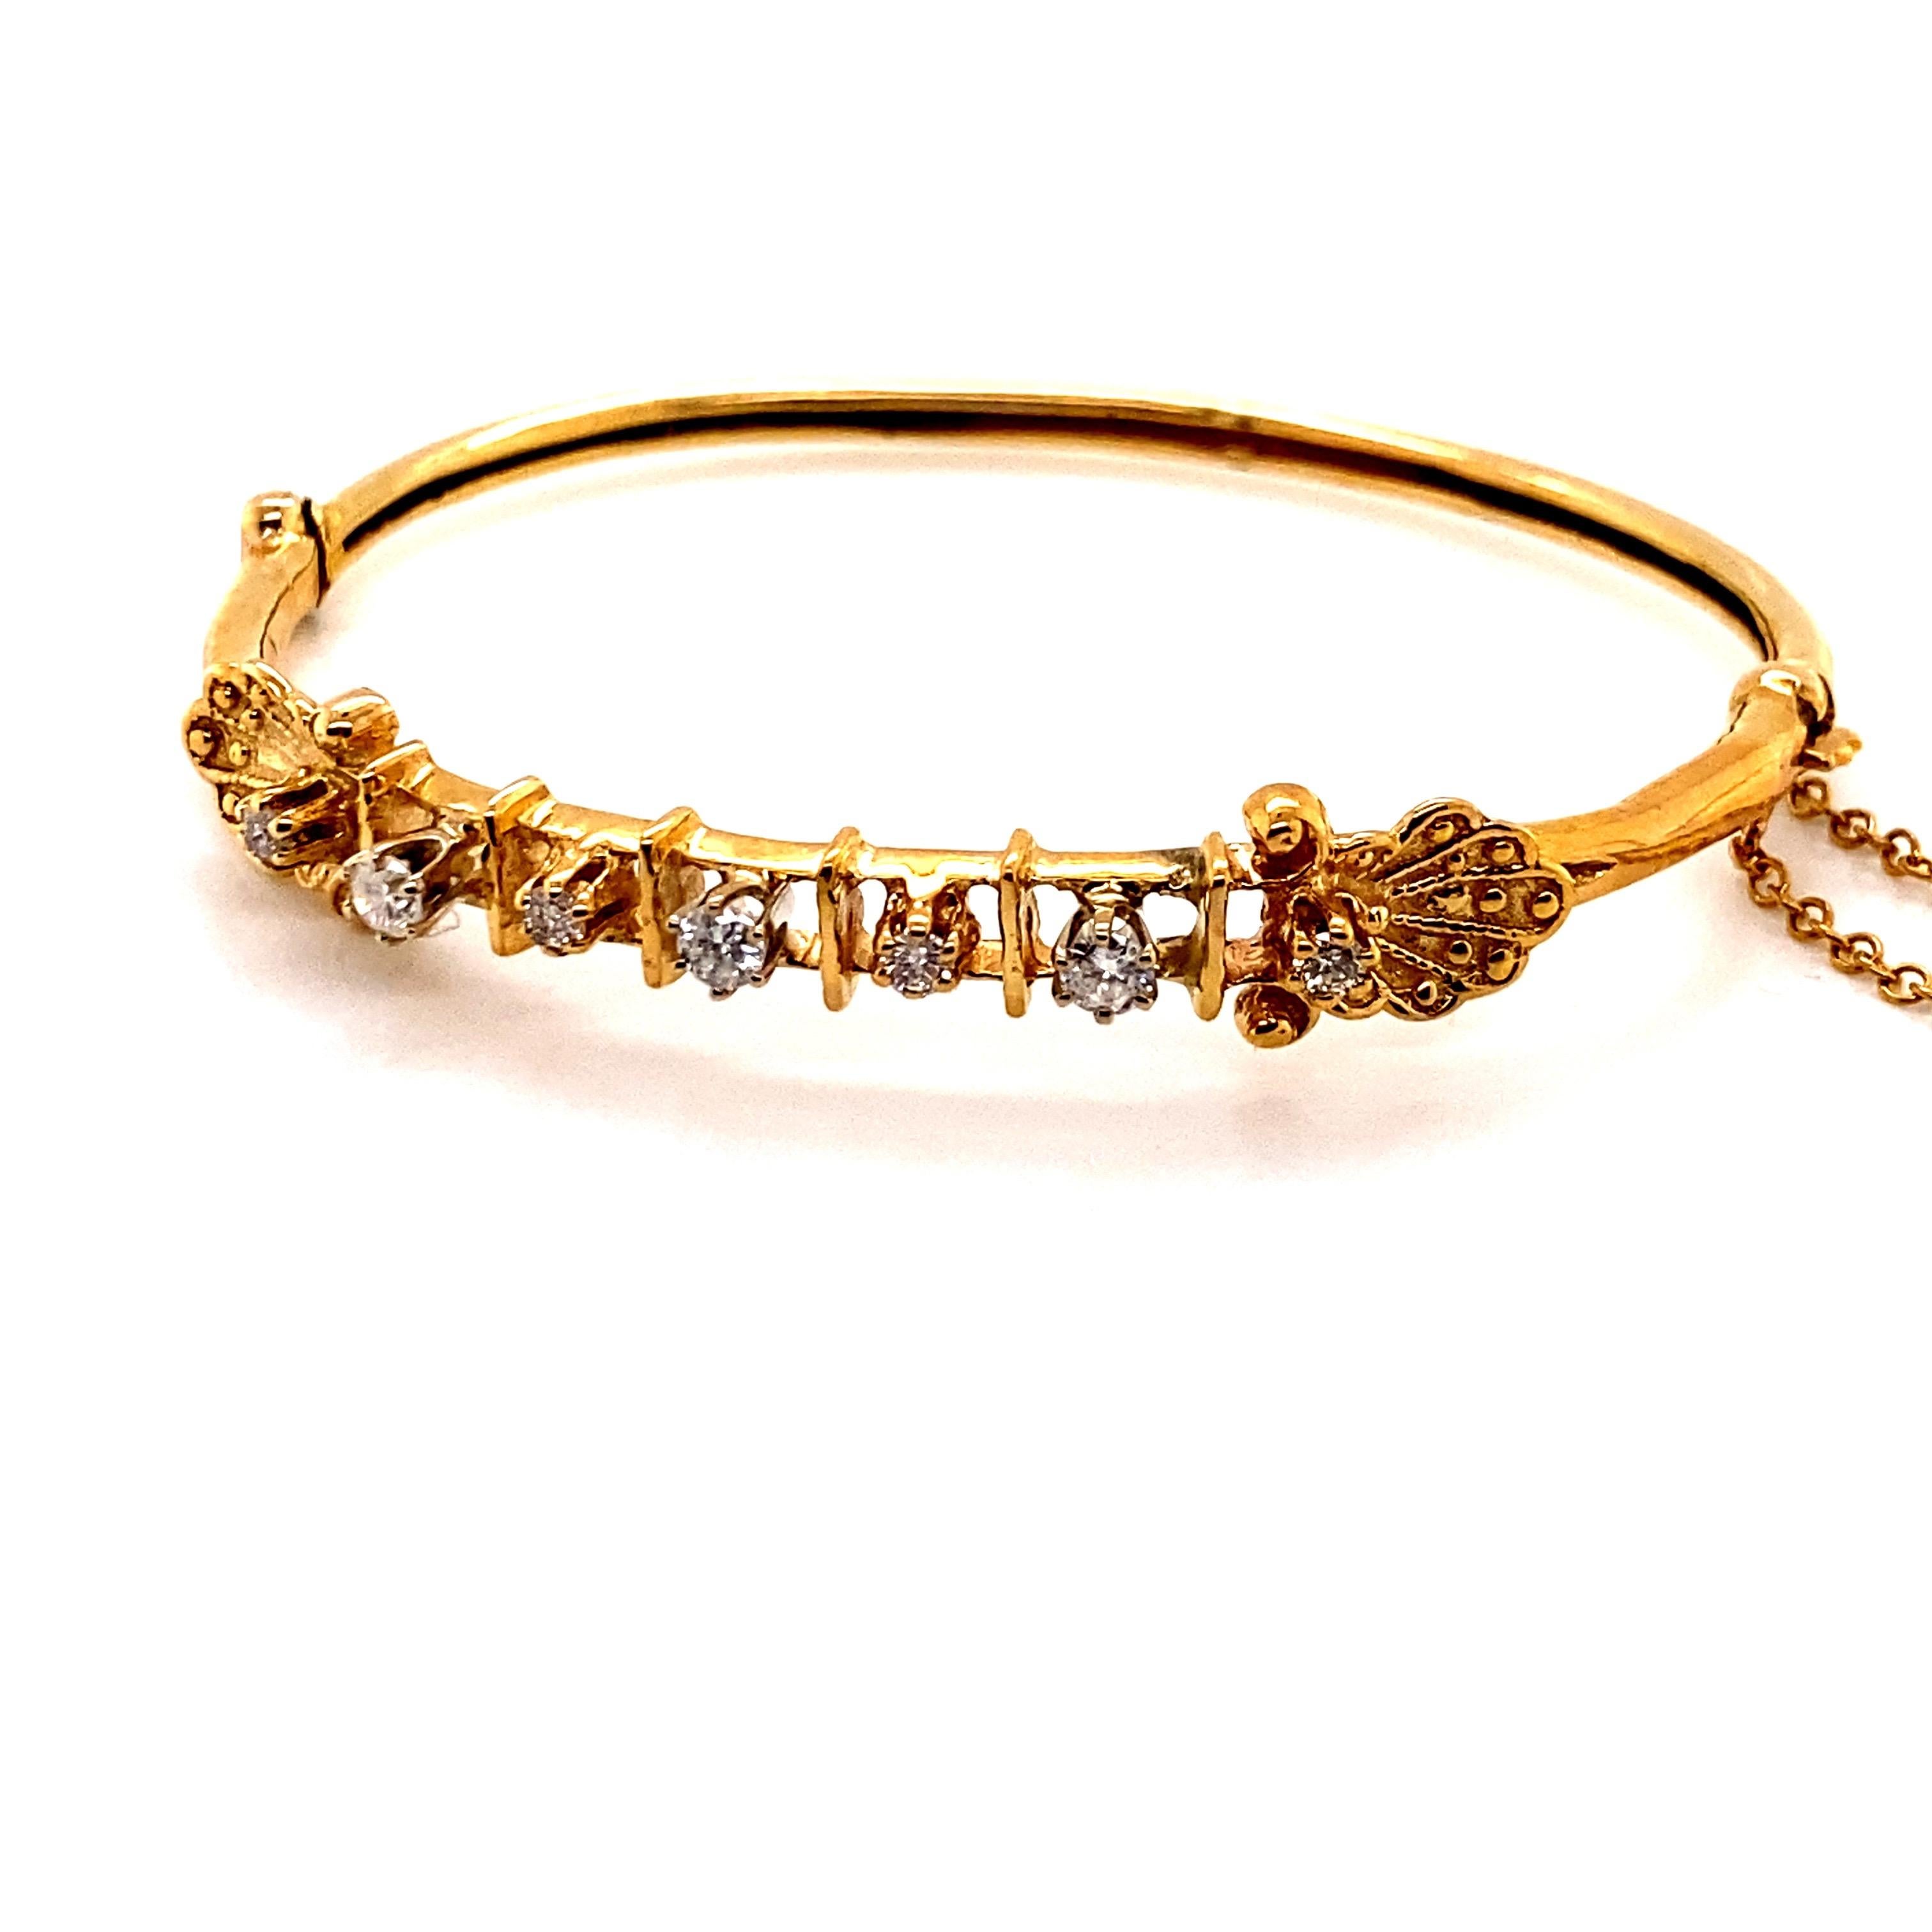 Vintage 14K Yellow Gold Victorian Reproduction Diamond Bangle Bracelet - Le bracelet contient 7 diamants ronds pesant environ .45ct avec G - H couleur et I1 clarté. La largeur du tube du bracelet est de 3 mm. Le diamètre intérieur est de 2 pouces de